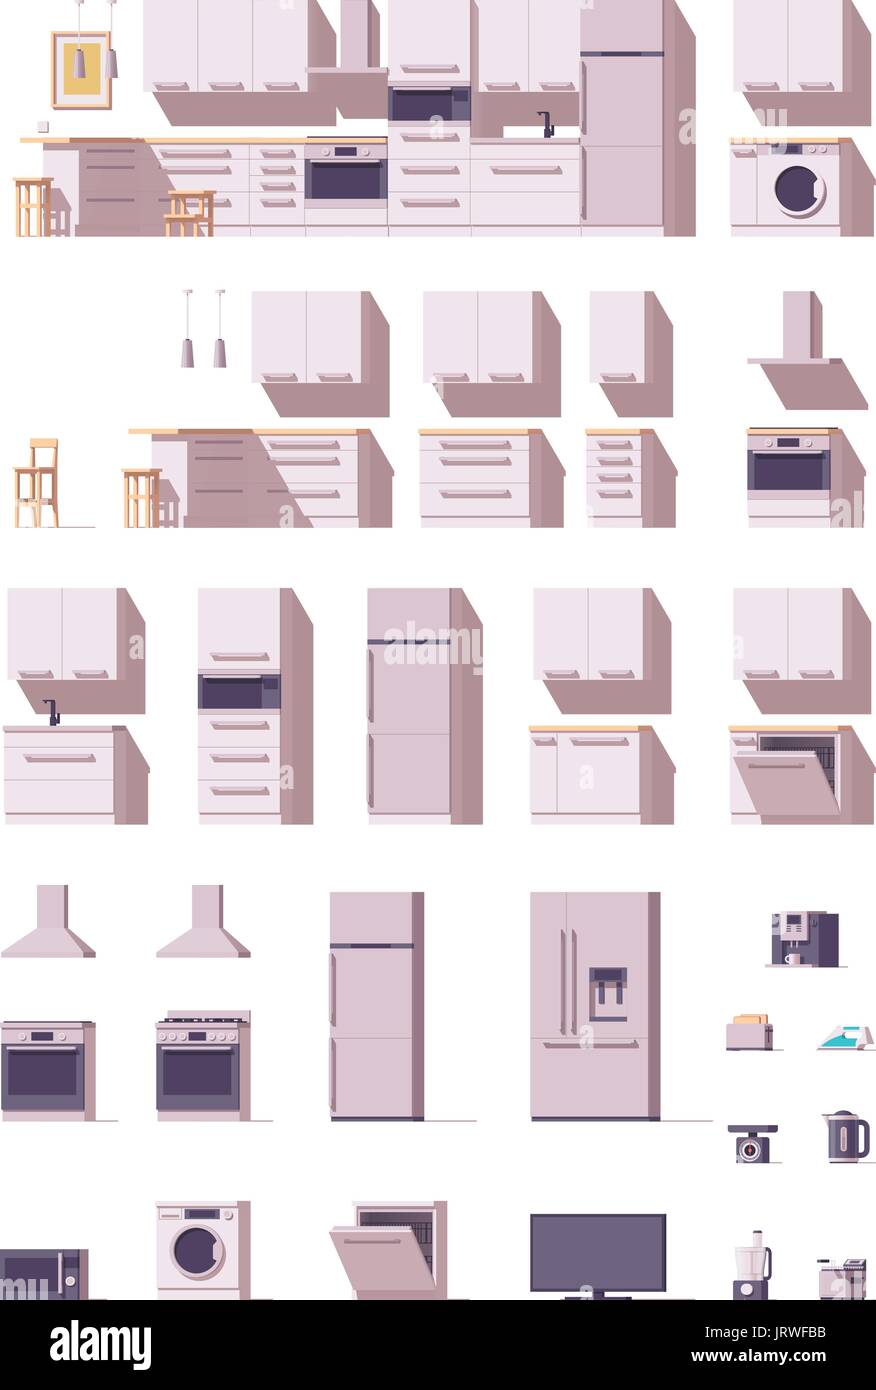 Vektor-Küche und Möbel-set Stock Vektor